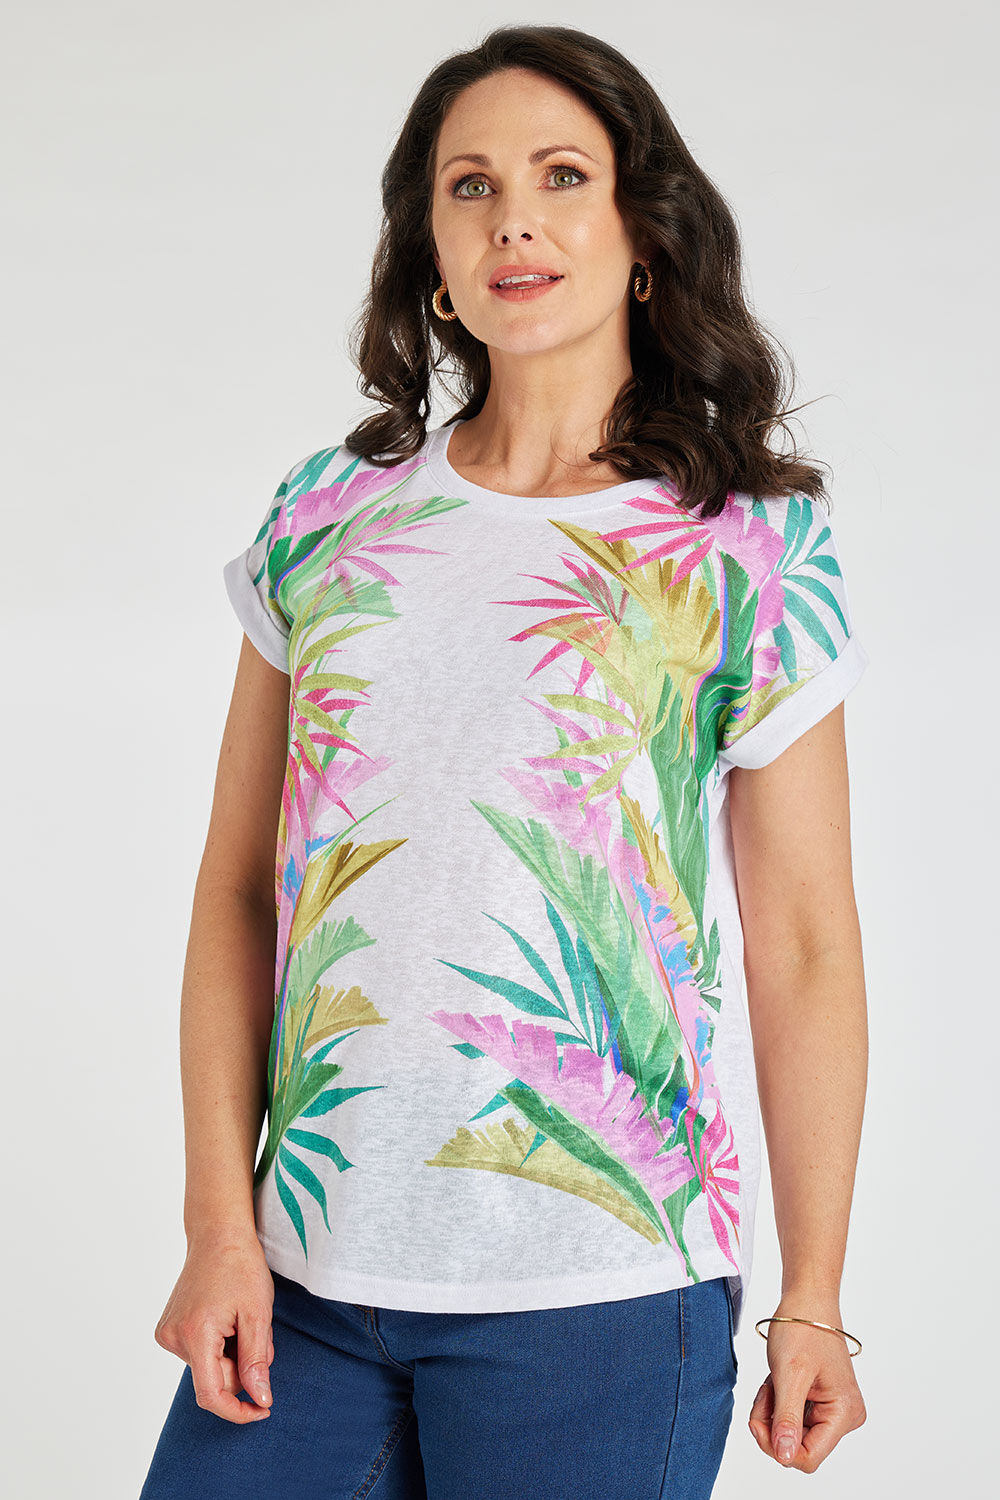 Bonmarche White Short Sleeve Palm Print Linen Look T-Shirt, Size: 28